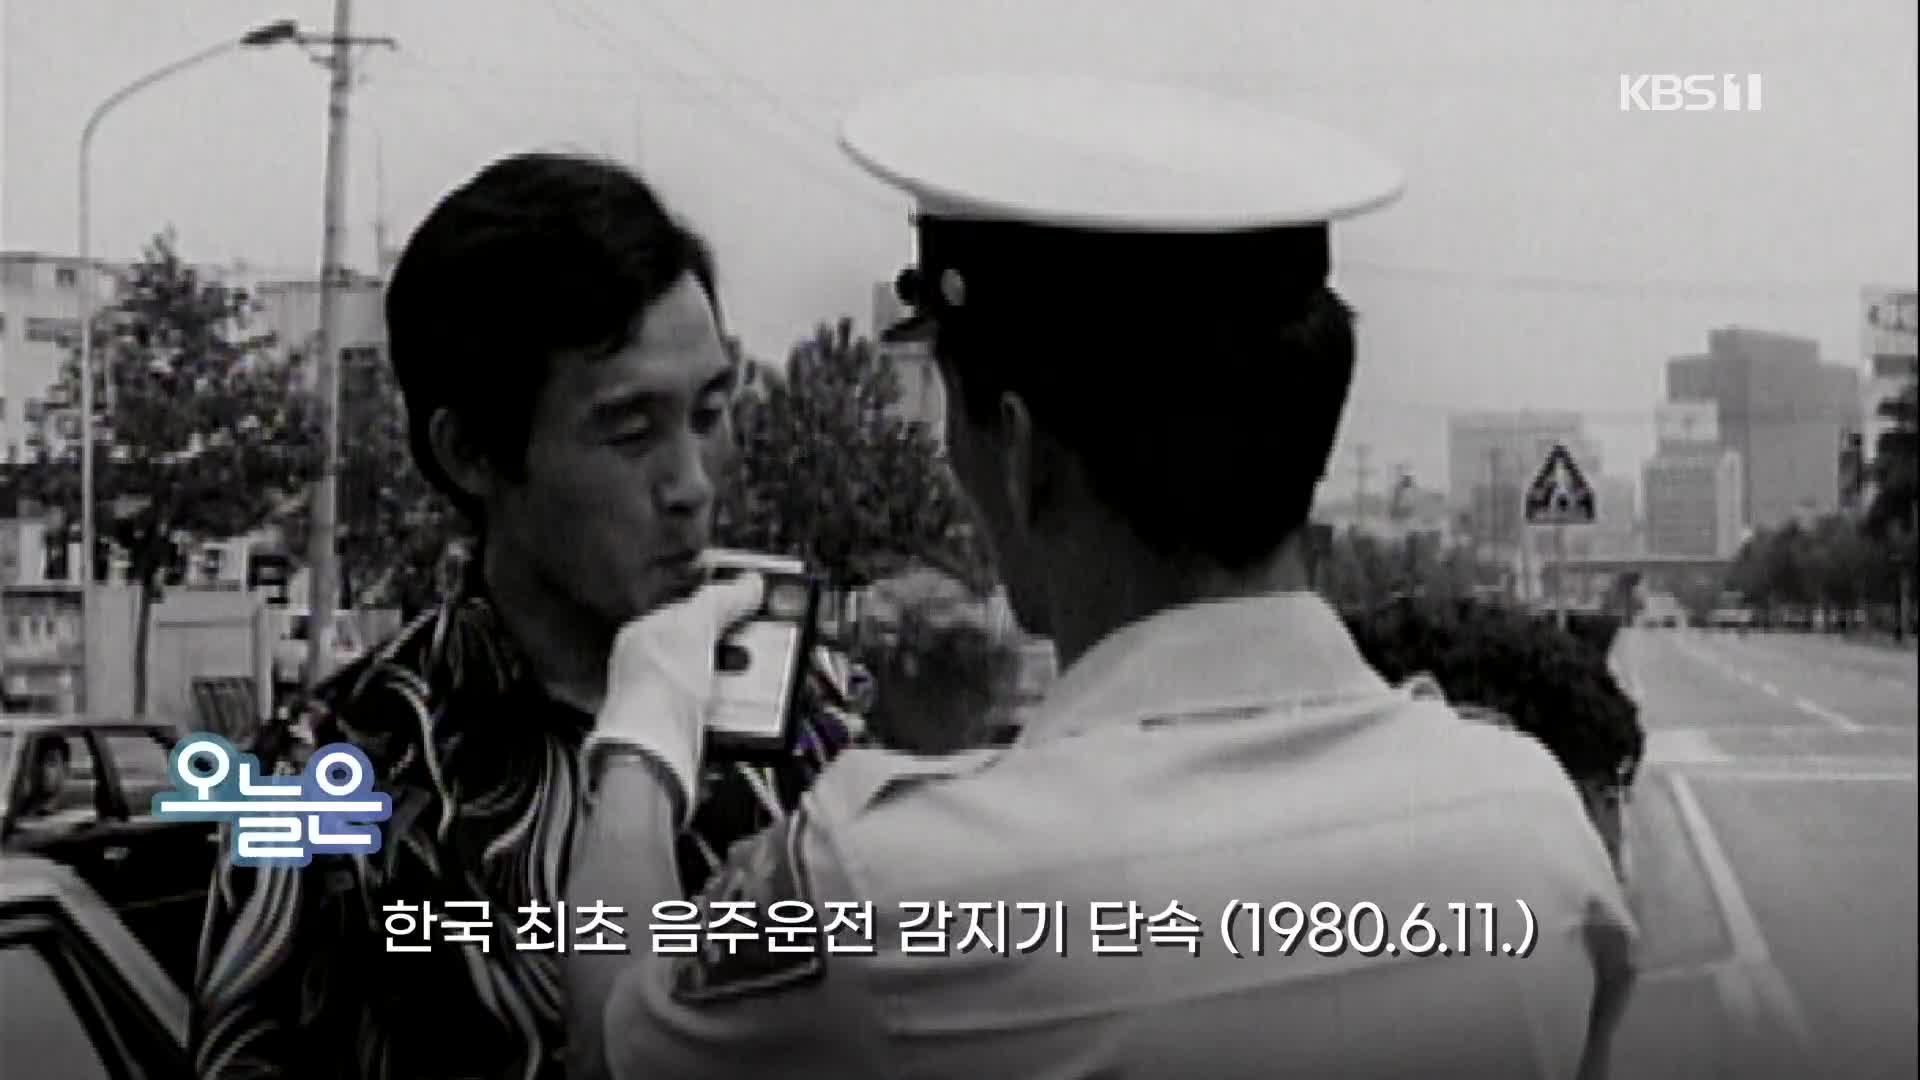 [오늘은] 한국 최초 음주운전 감지기 단속(1980.6.11.)